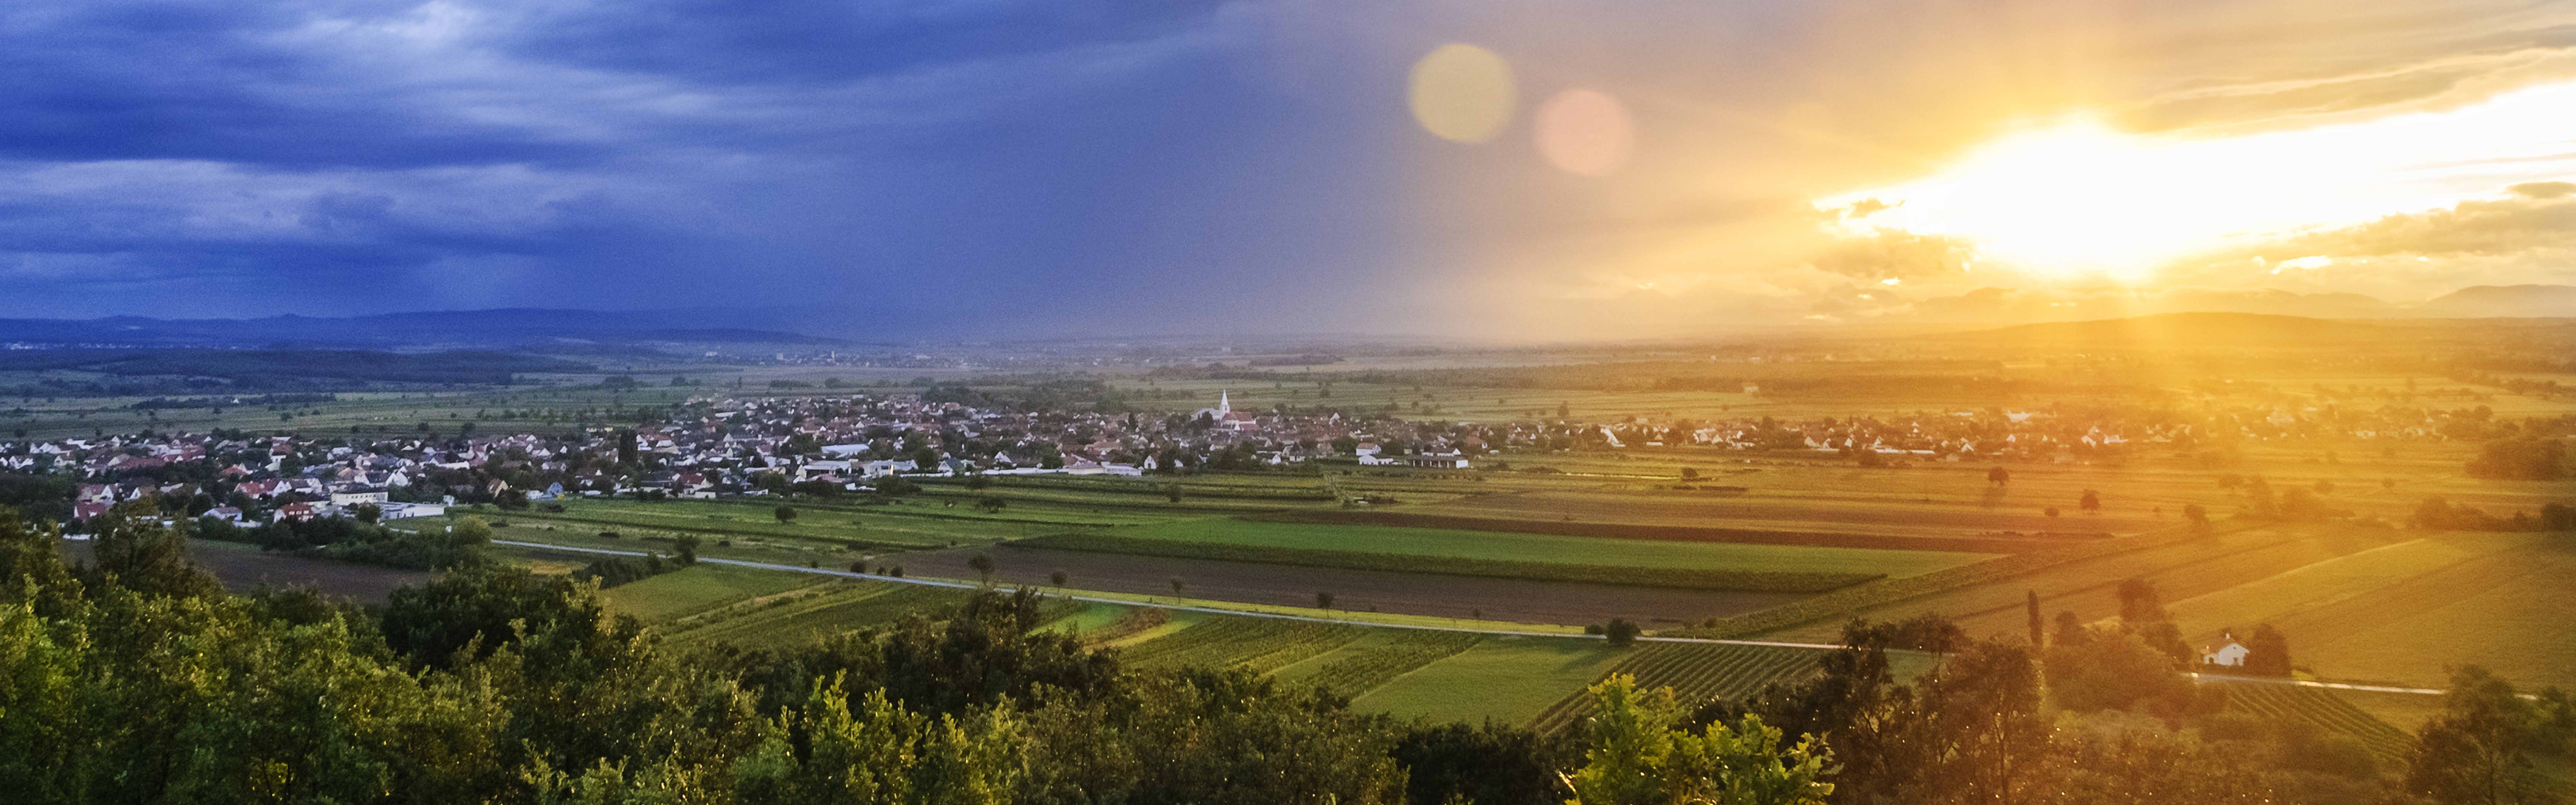 Sturmwolken und Sonne über einer Gemeinde im Burgenland